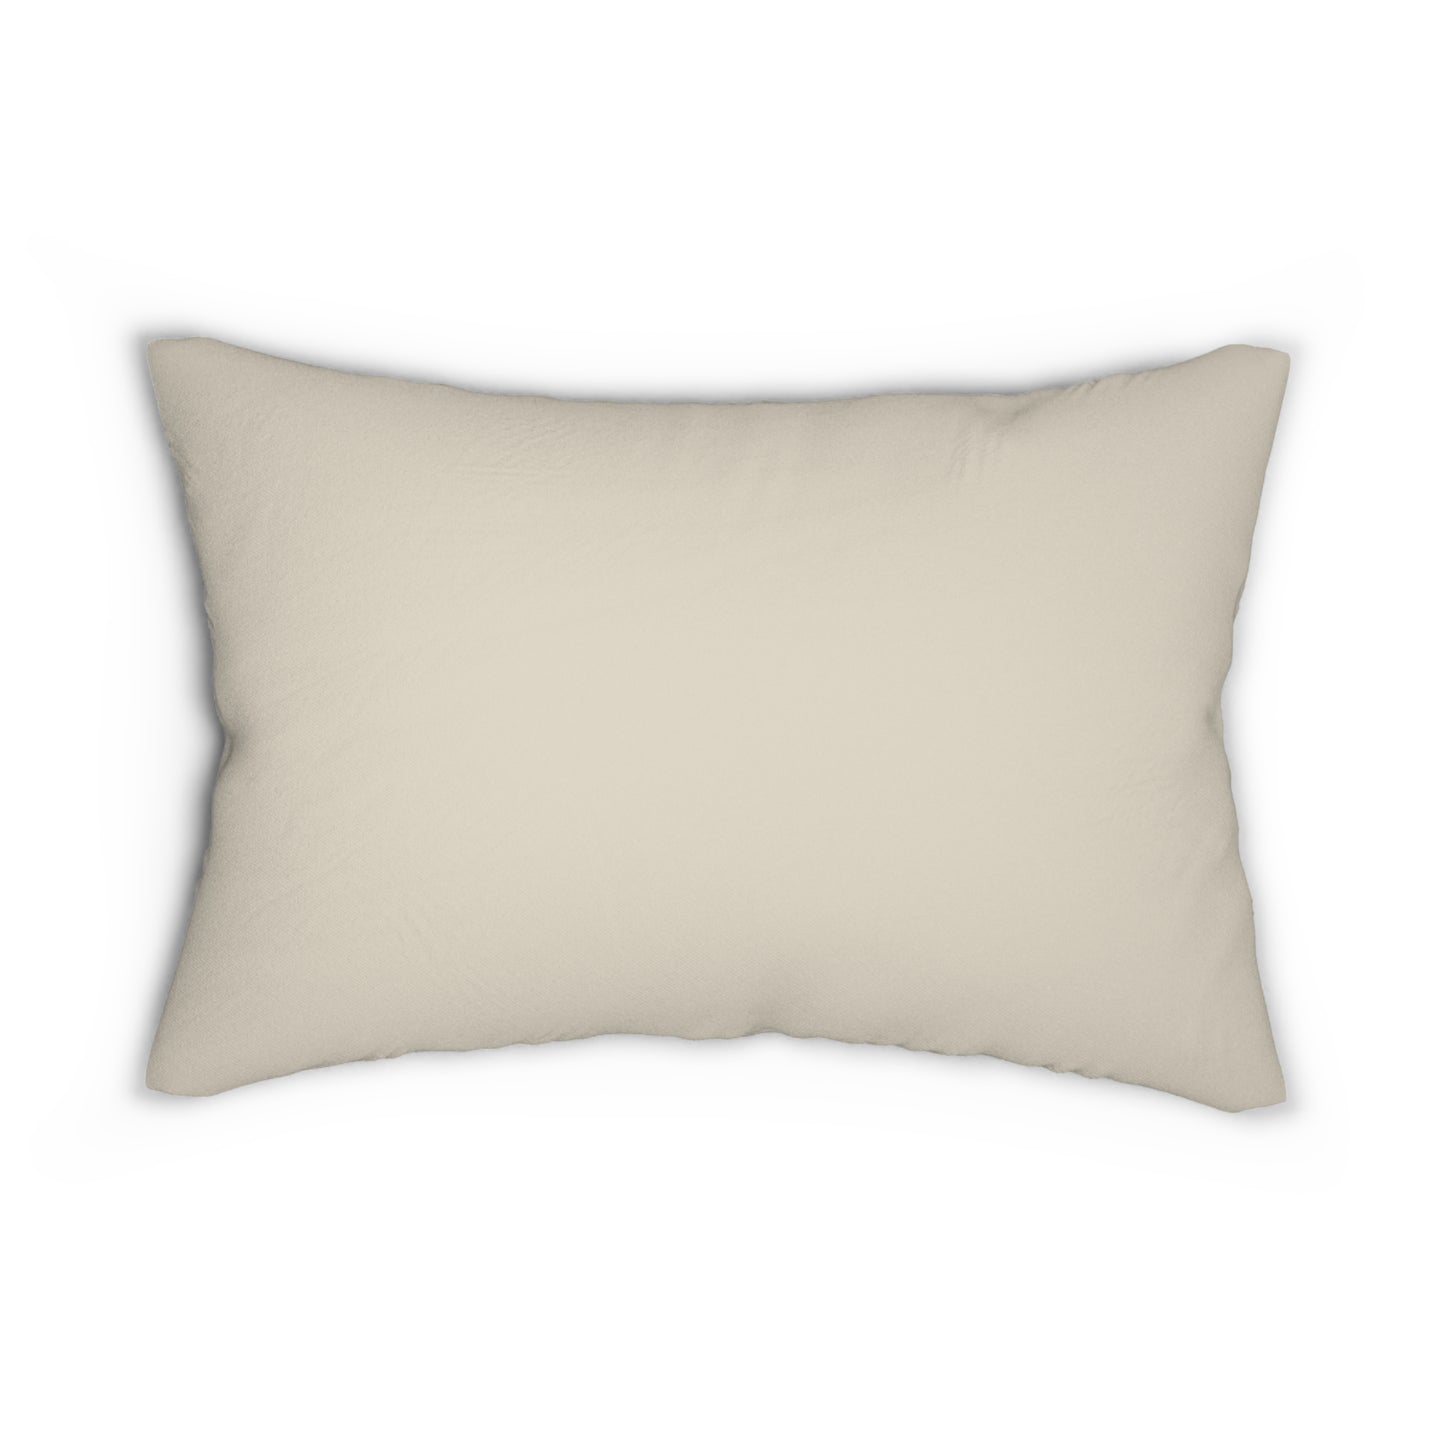 Chicken Flock Pillow - Lumbar Pillow Chicken Keeper Pillow Housewarming Gift Chicken Lover Gift Farm Life Home Decor